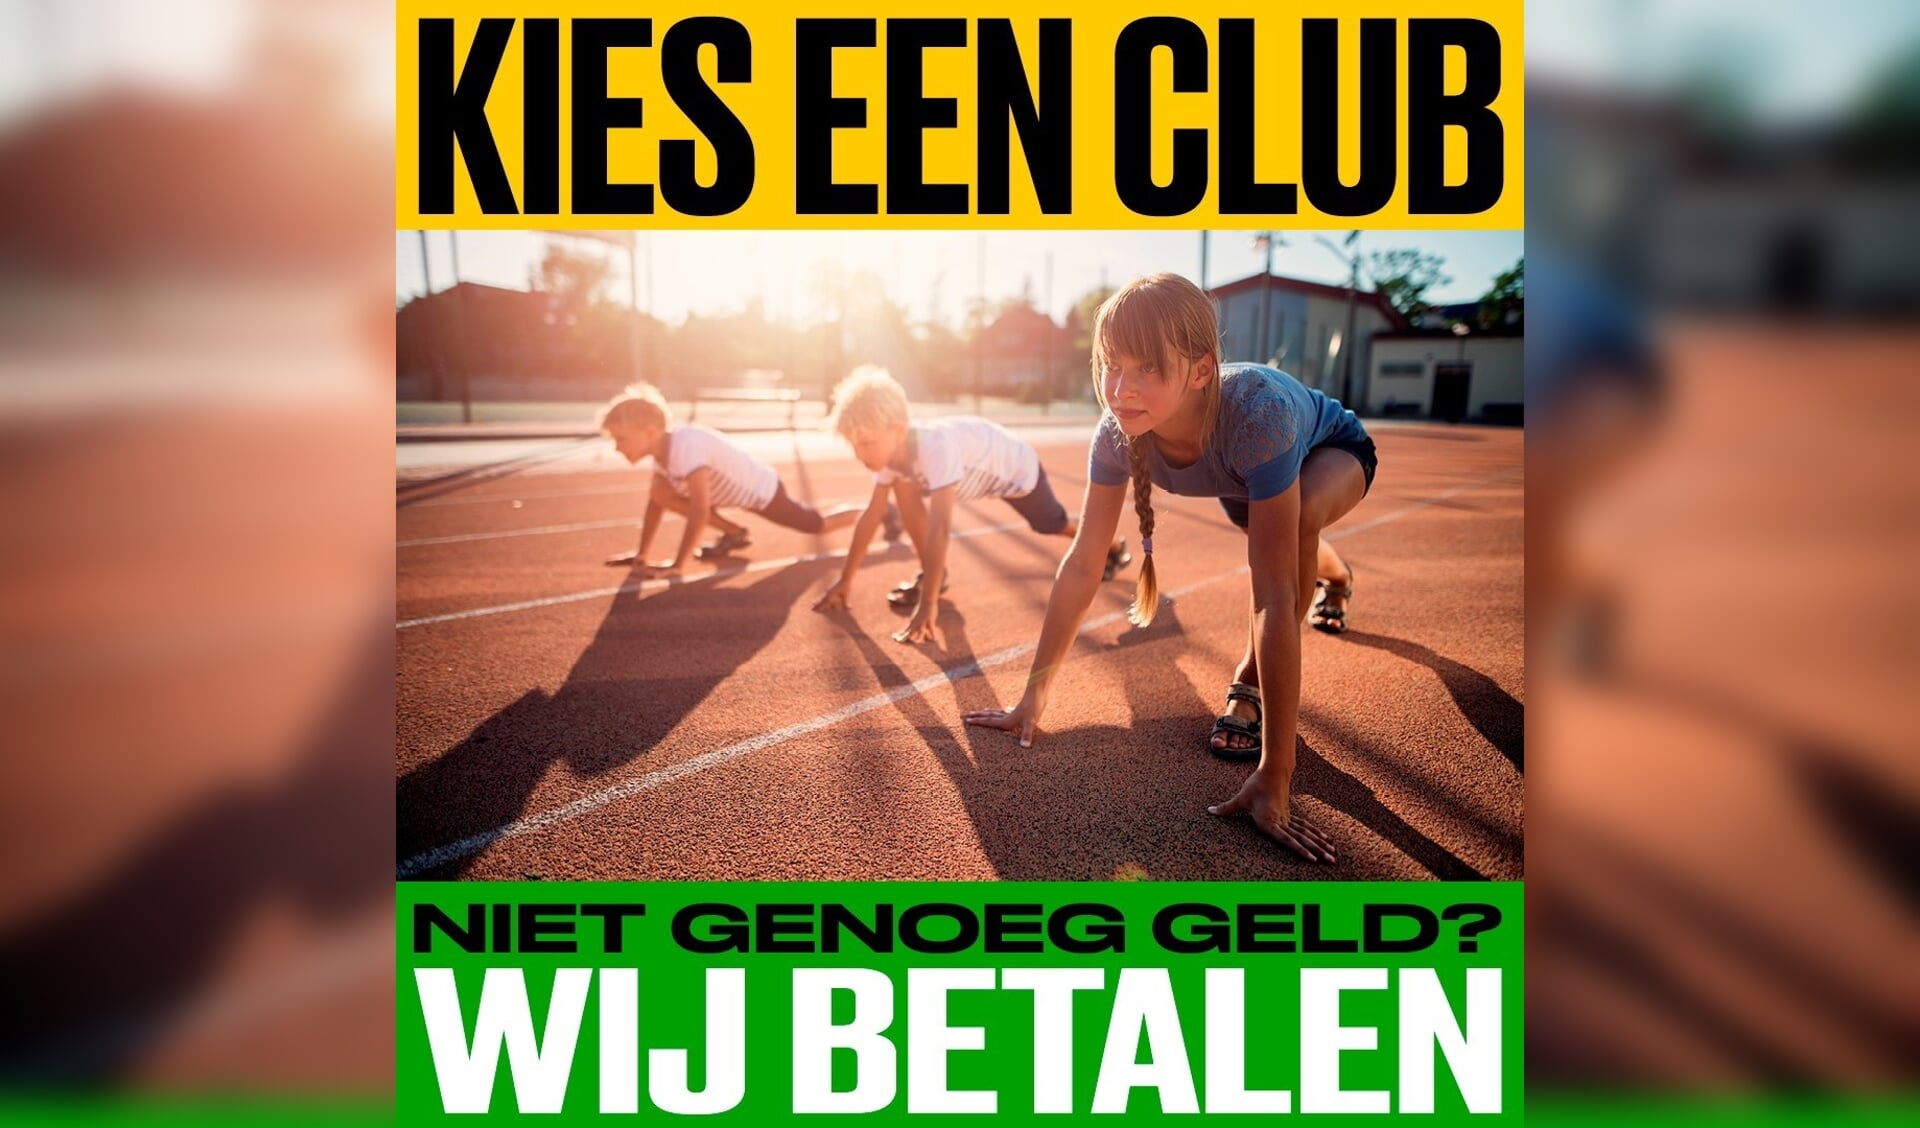 De campagne 'Kies een club' loopt tot en met half juni en is zichtbaar in de supermarktketen Dirk van den Broek en diverse online platformen. Ook het Jeugdfonds Sport Brabant doet aan deze campagne mee.